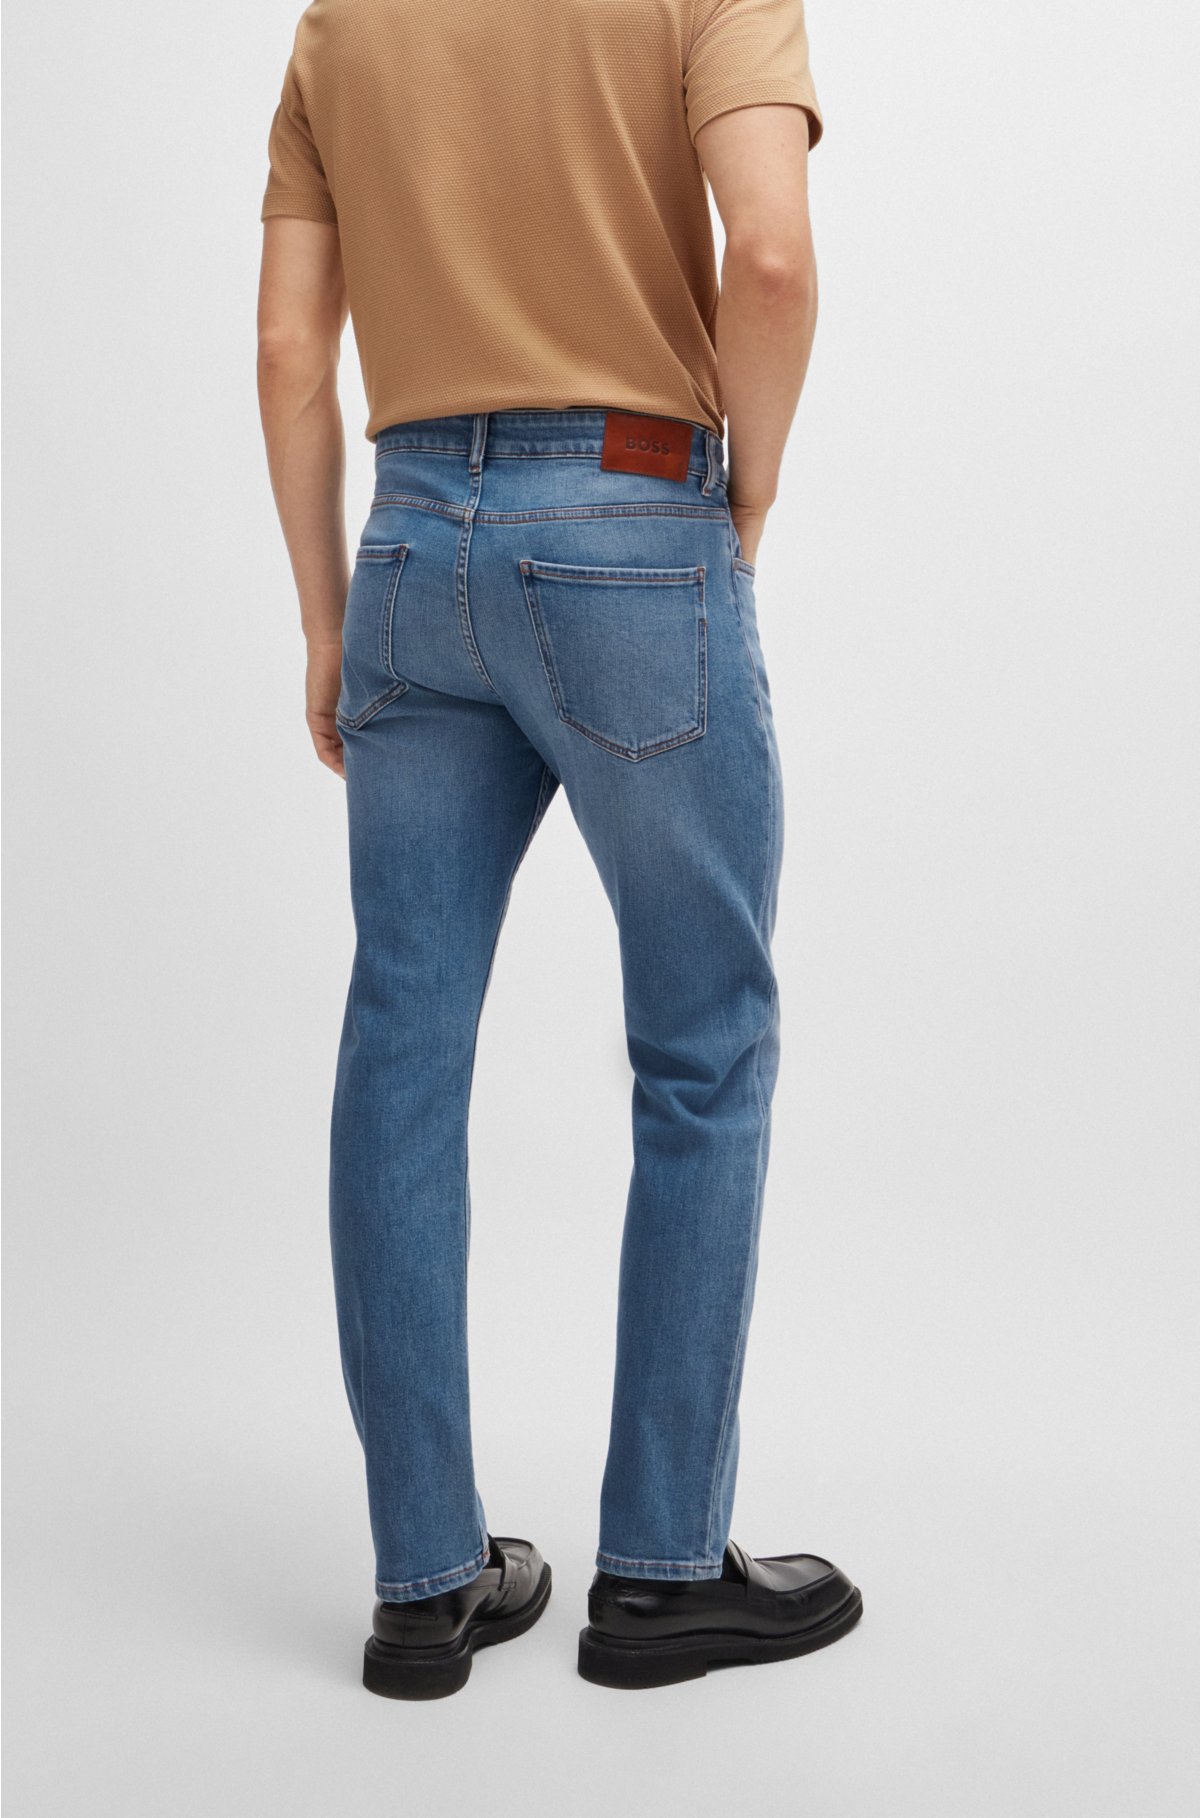 Slim-fit jeans in pure-blue comfort-stretch denim, Blue